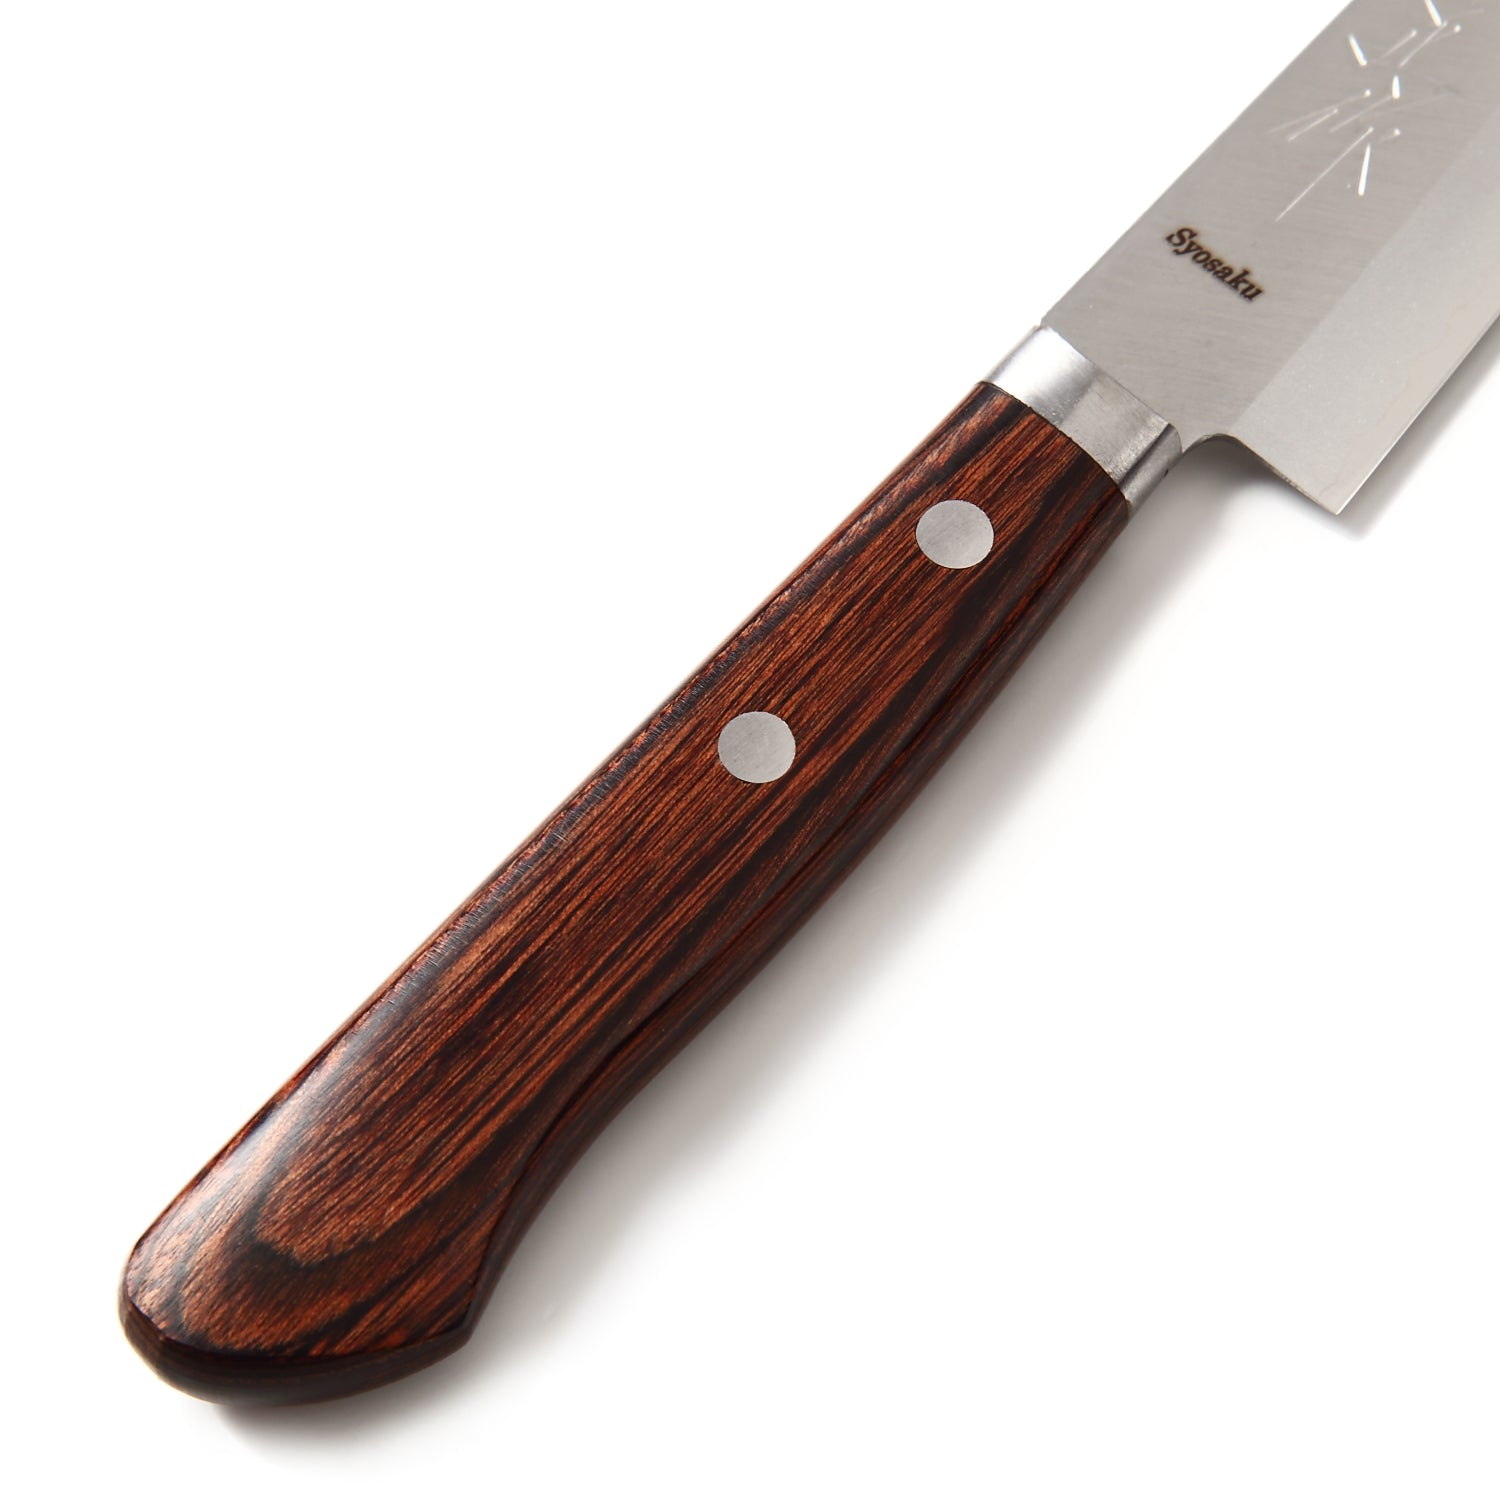 Syosaku Japanese Petty Best Sharp Kitchen Chef Knife VG-1 Gold Stainless Steel Mahogany Handle, 5.3-inch (135mm) - Syosaku-Japan